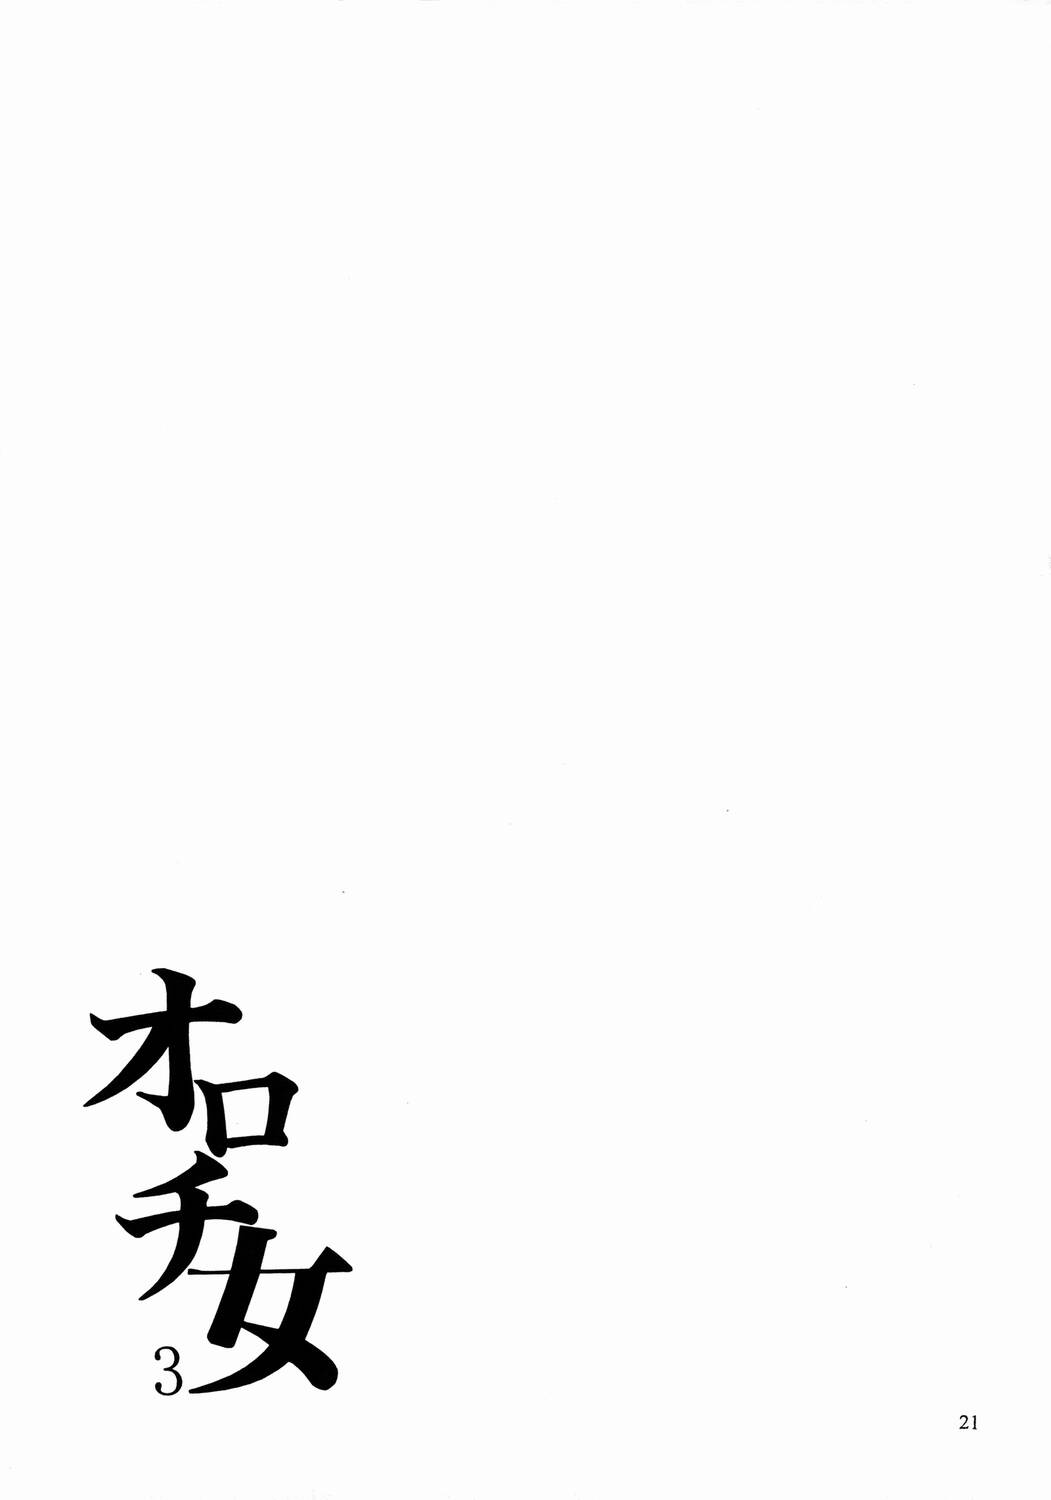 (CR33) [SEMEDAIN G (Mokkouyou Bond)] SEMEDAIN G WORKS vol. 17 - Orochijo 3 (The King of Fighters) page 20 full